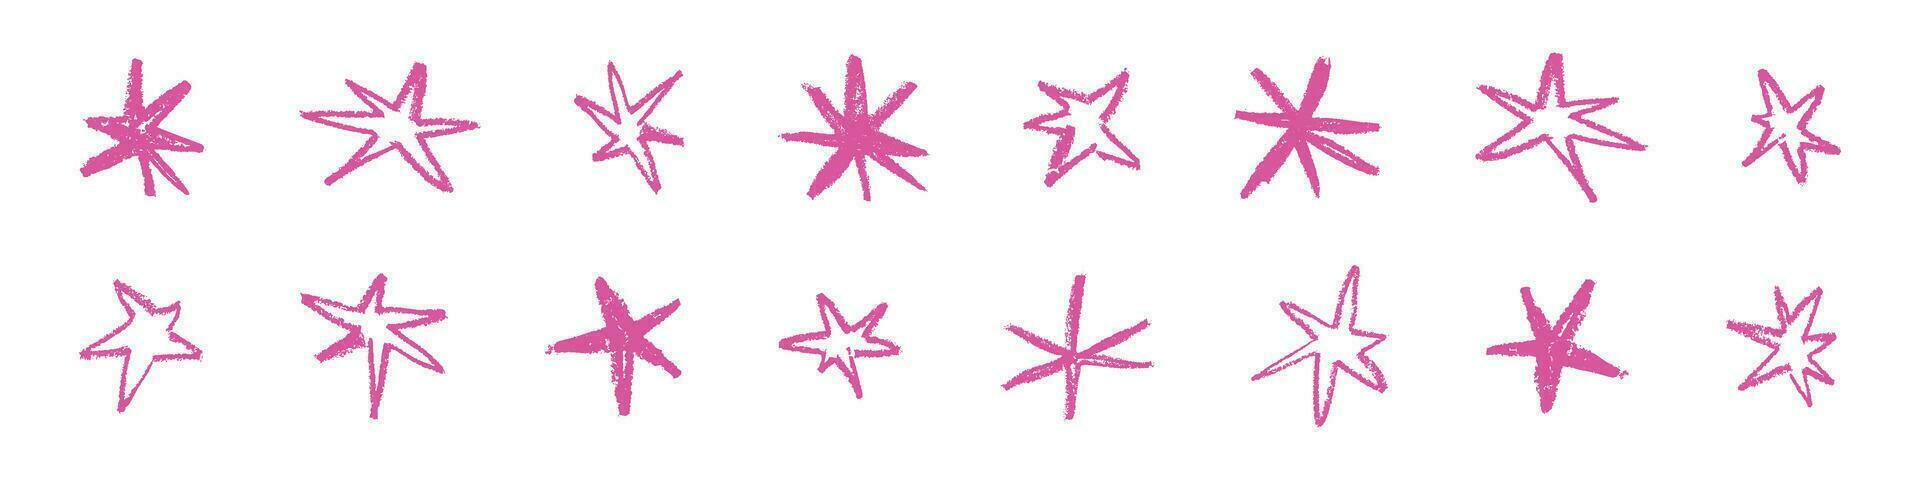 hand- getrokken grunge ster vorm geven aan, met ruw borstel beroertes en verstuiven Effecten in roze. wijnoogst structuur en kalkachtig krabbelen. vlak vector illustratie geïsoleerd Aan wit achtergrond.